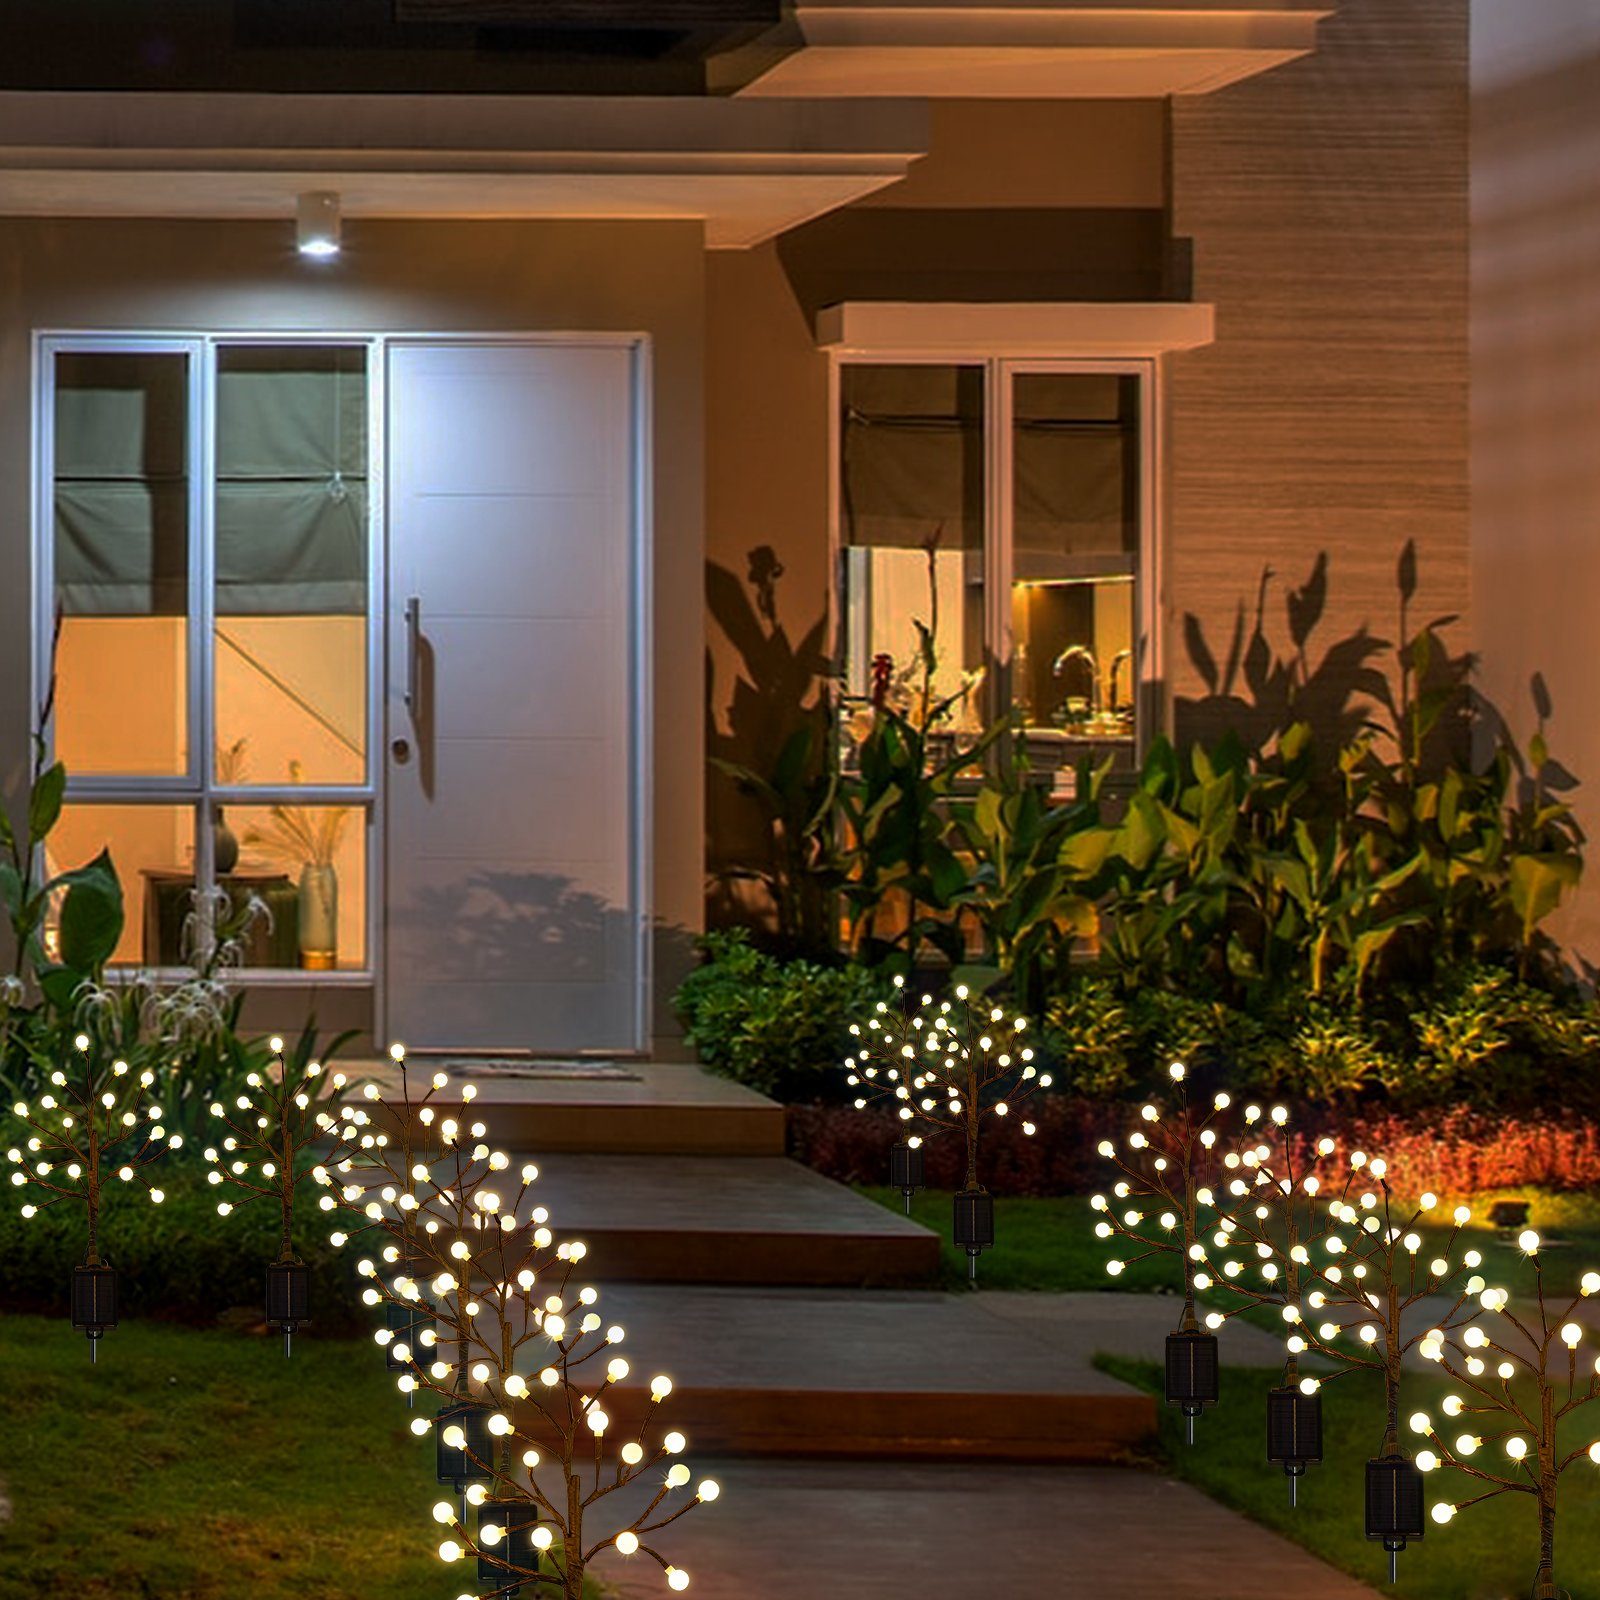 Sunicol LED Gartenleuchte für Modi, Lichter Warmweiß Solar Parks, Tanzfläche Fernbedienung, undGehwegen Gärten, Garten Rasenflächen, mit IP65 Höfen, Wasserdicht, 8